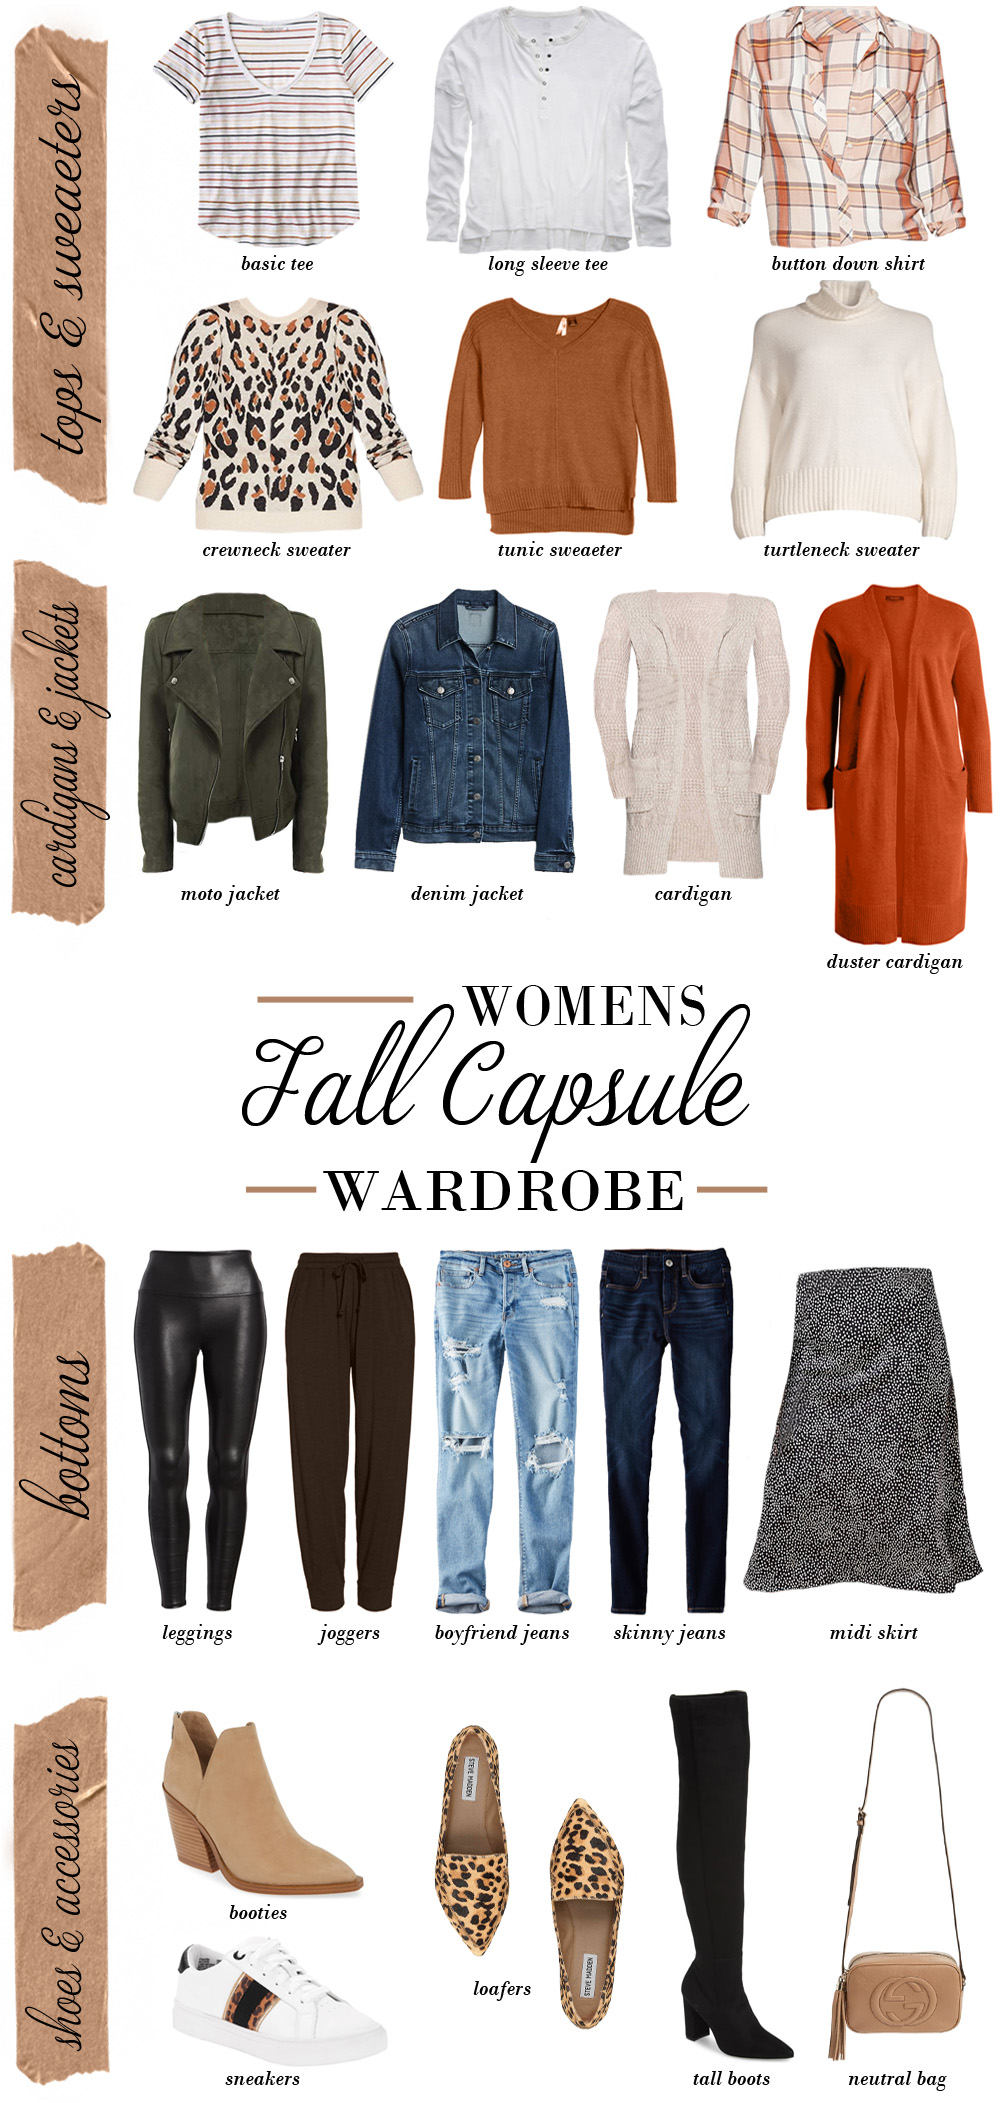 fall capsule wardrobe checklist 2021